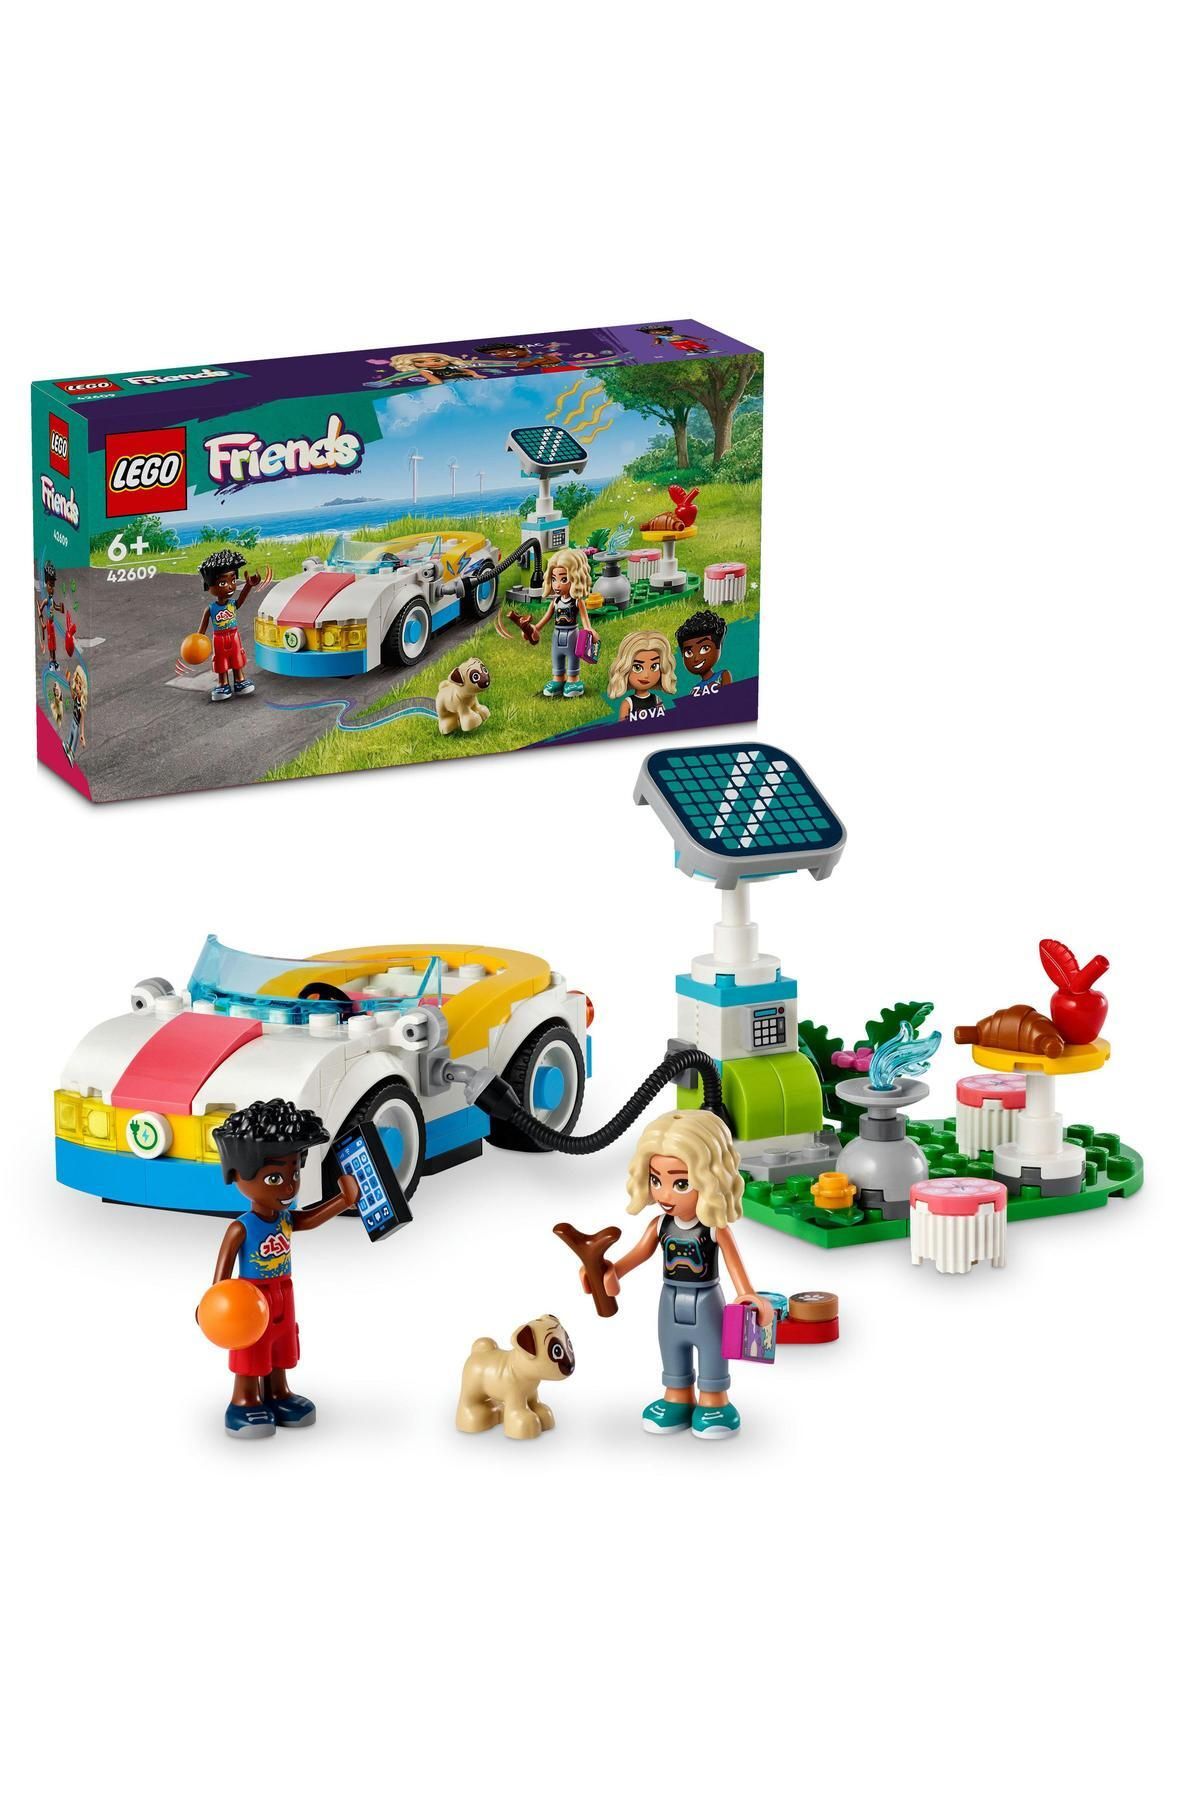 LEGO ® Friends Elektrikli Araba ve Şarj İstasyonu 42609  - 6 Yaş ve Üzeri İçin Yapım Seti (170 Parça)